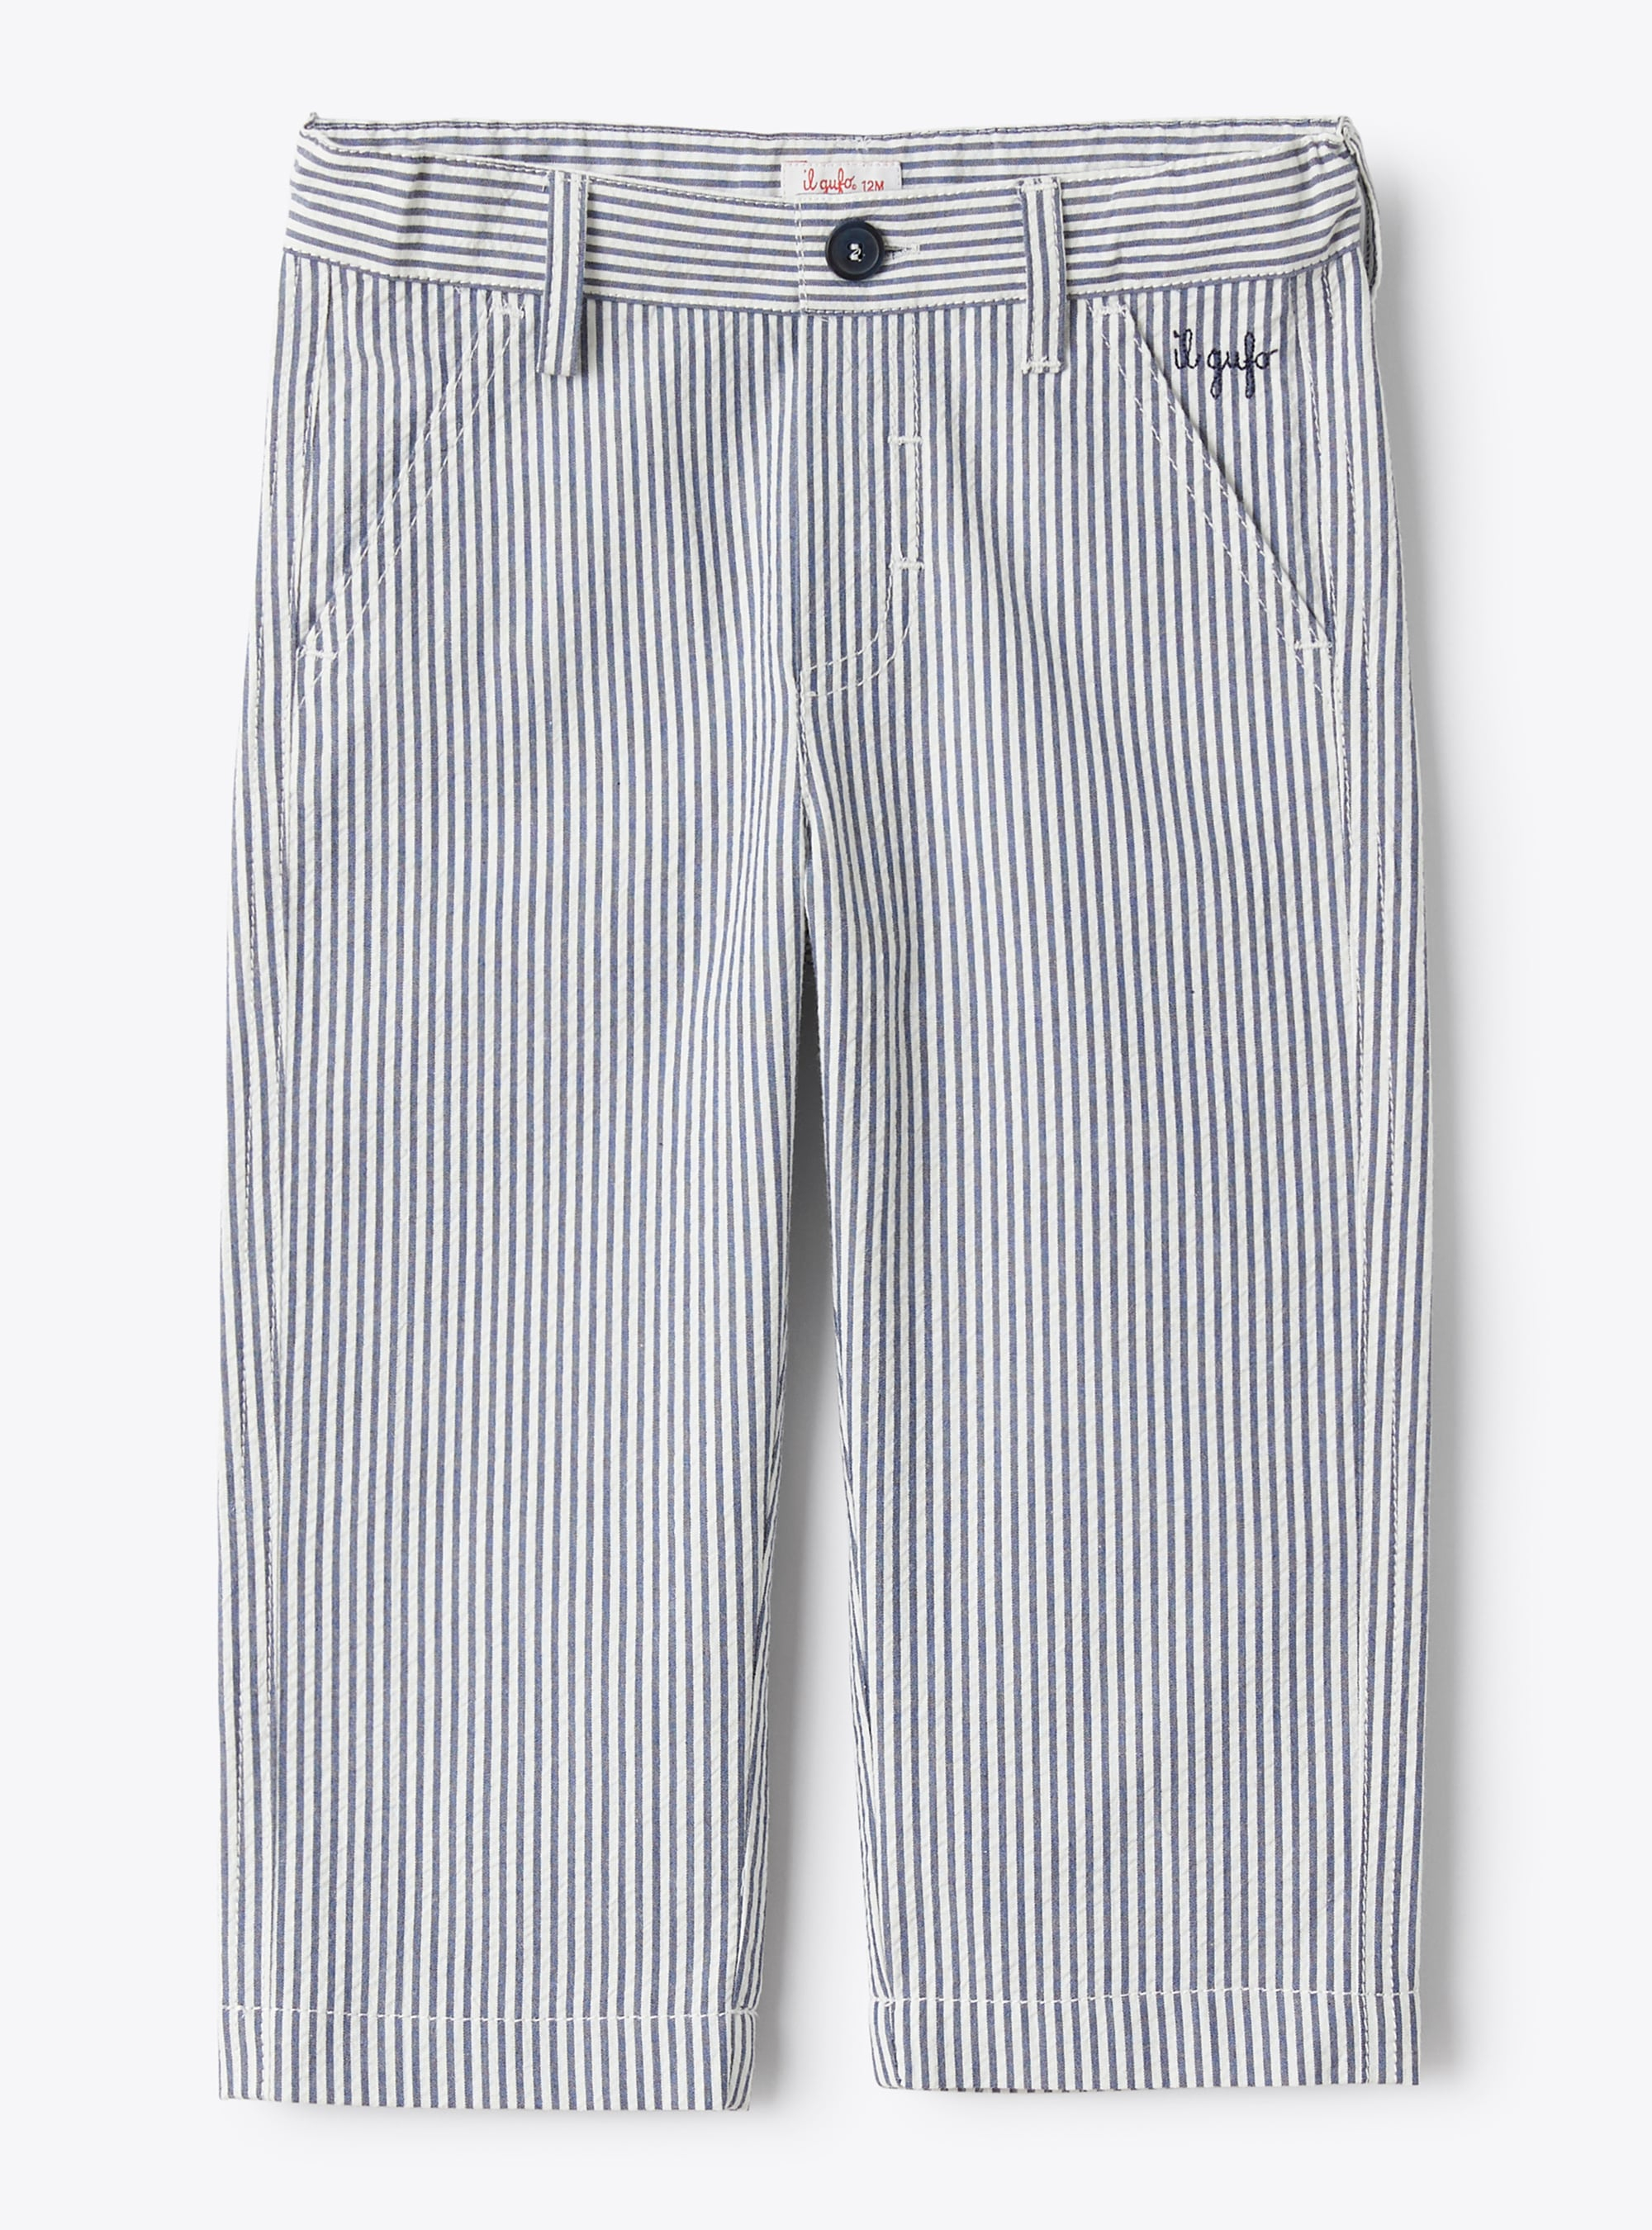 Pantalone da neonato in seersucker a righe blu e bianche - Blu | Il Gufo